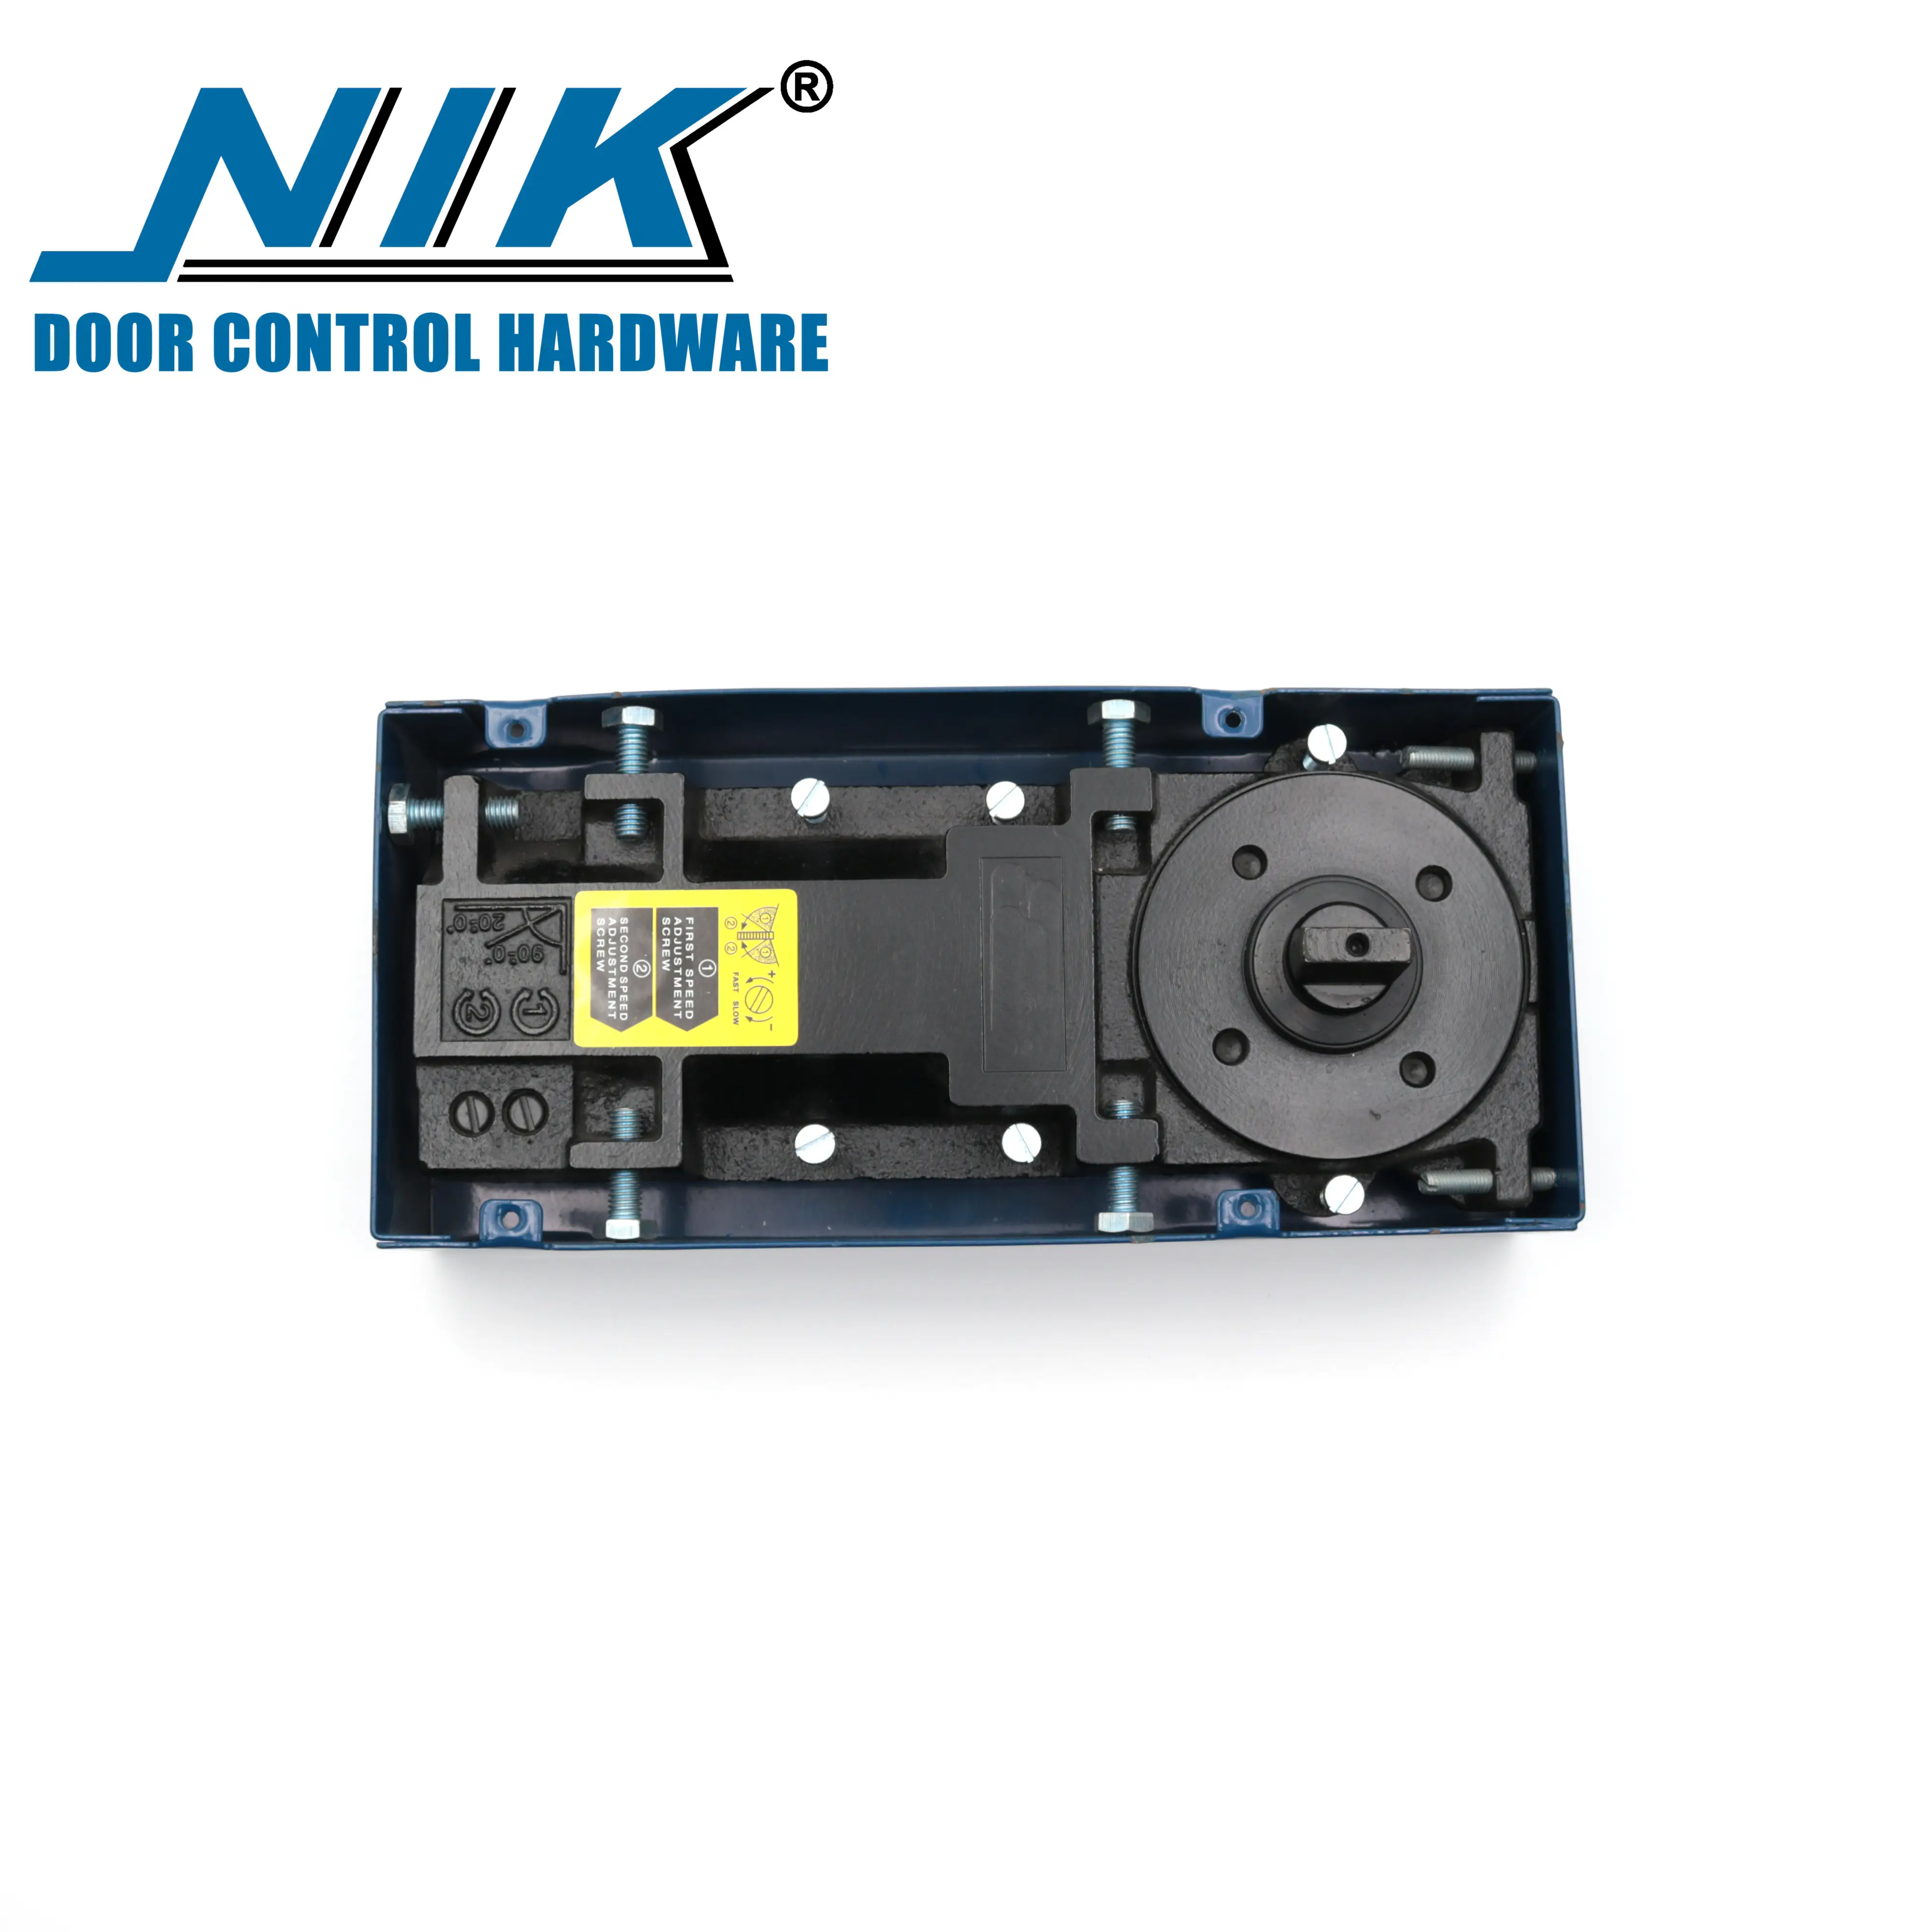 NIK K-9300 adjustable speed for glass door of floor spring